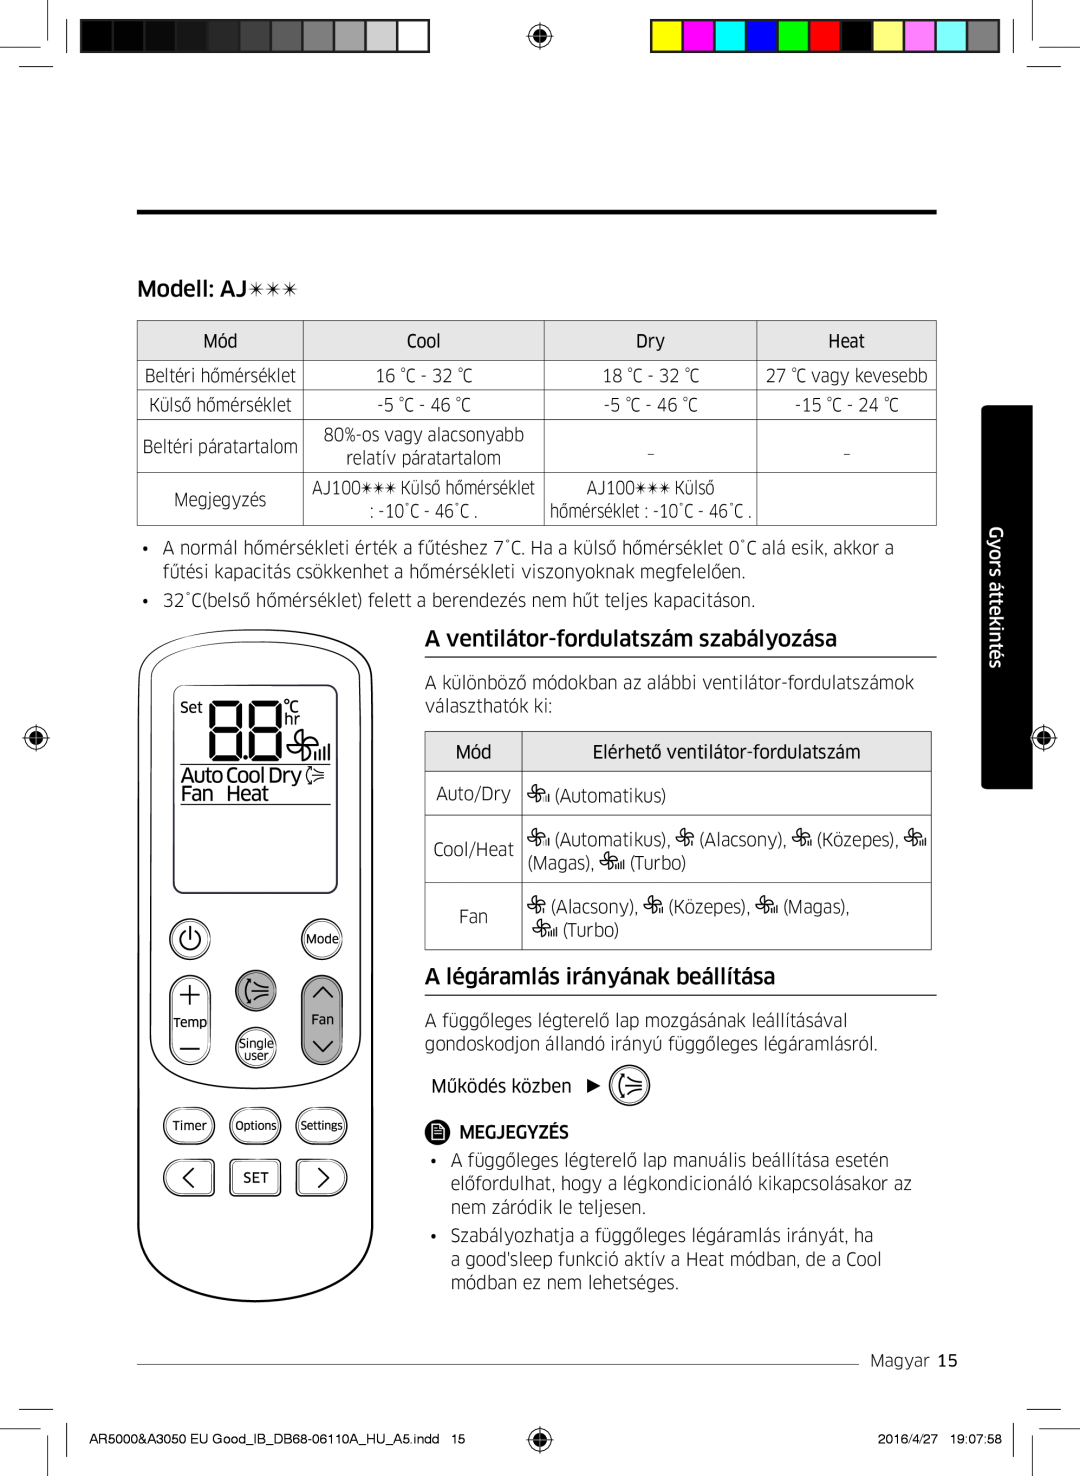 Samsung AR18JSFSBURNEU manual Modell AJ, A ventilátor-fordulatszám szabályozása, A légáramlás irányának beállítása 